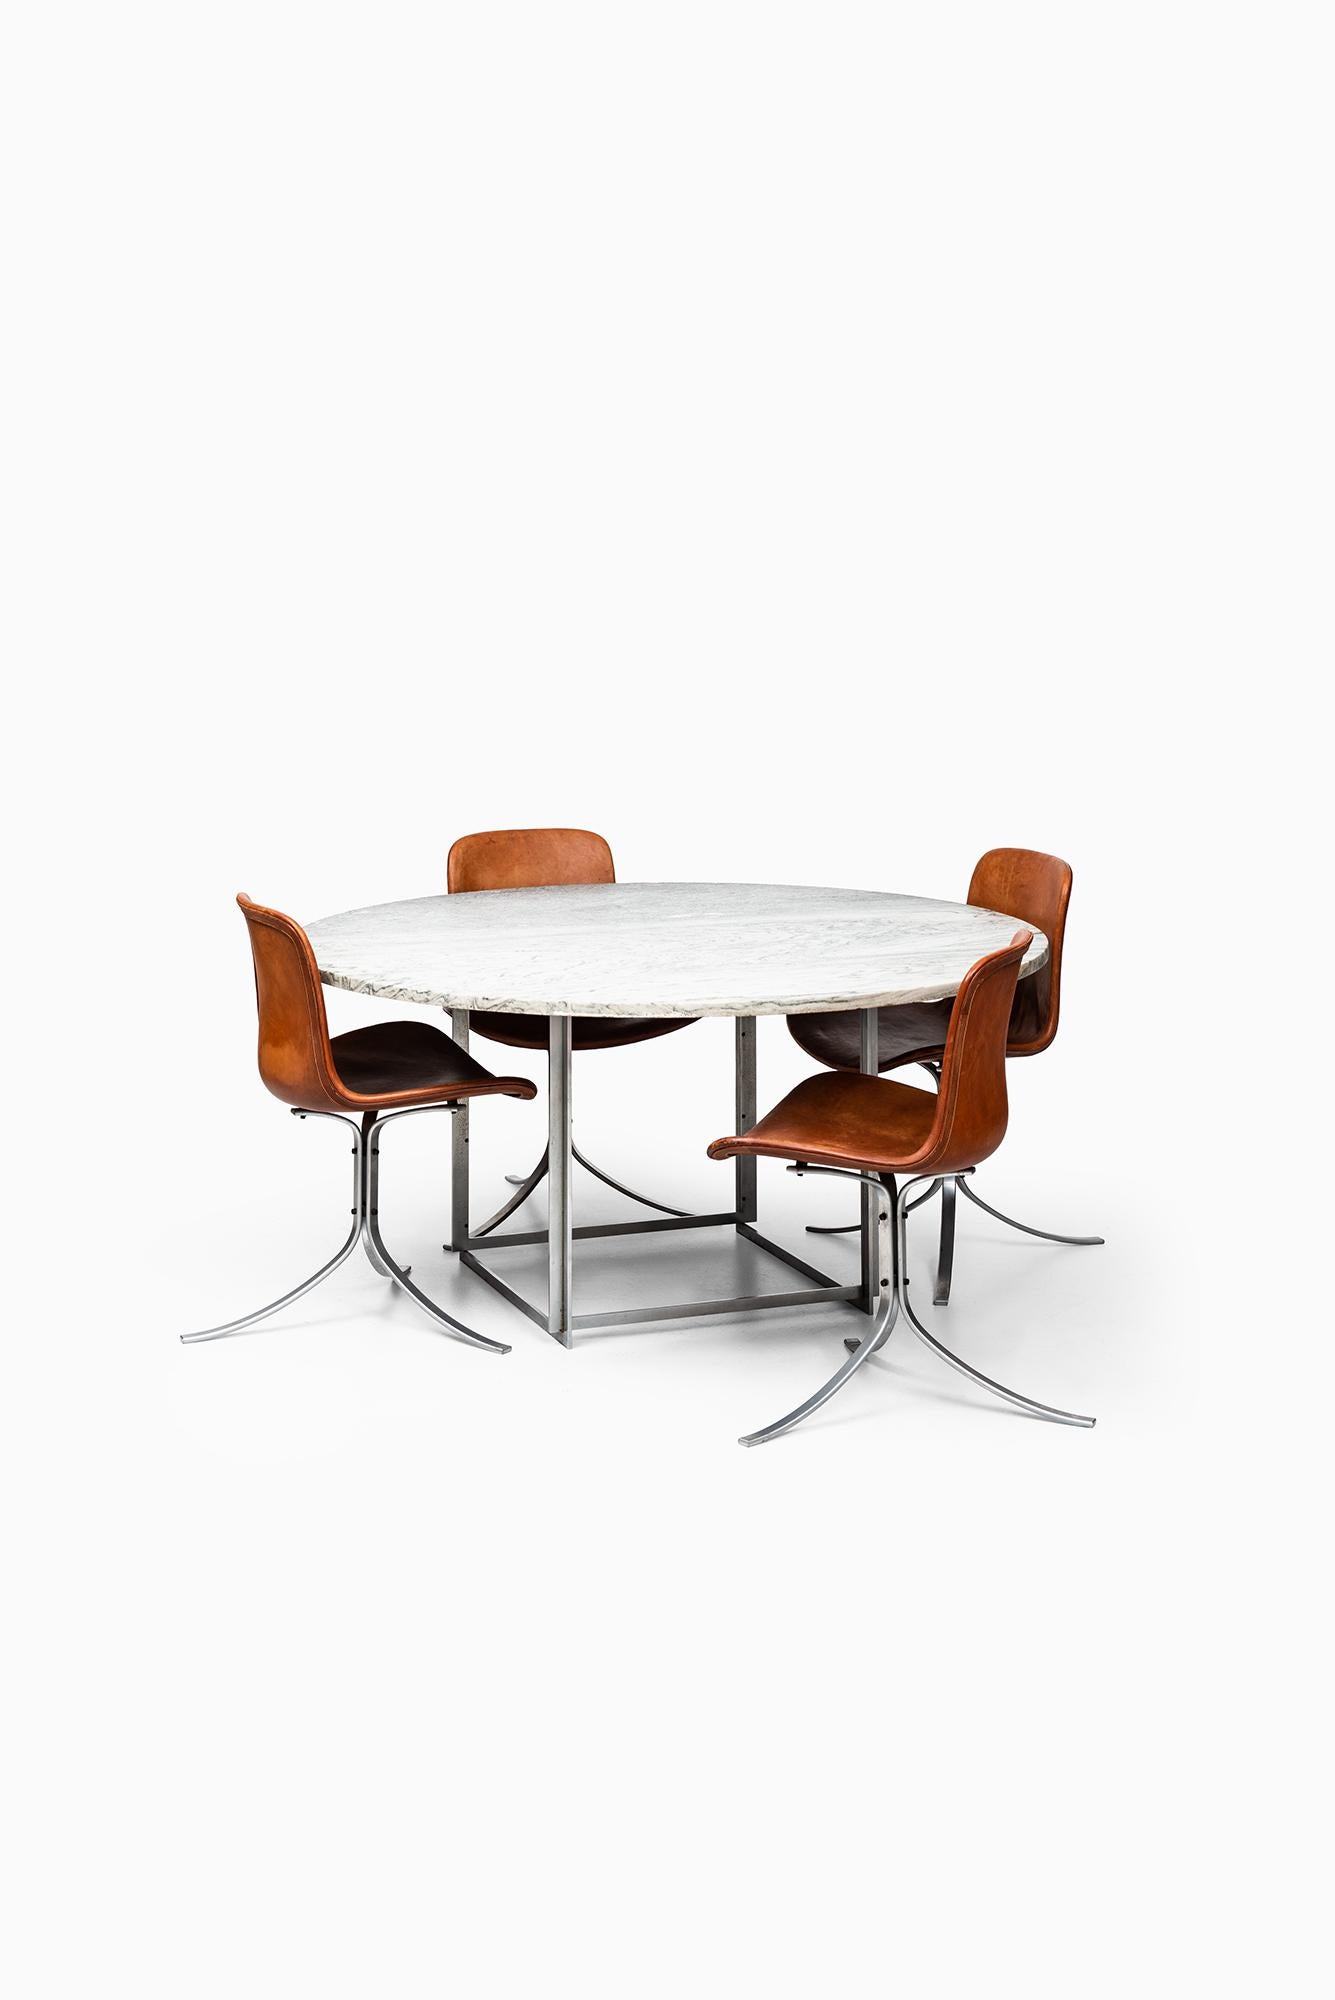 Rare dining table model PK-54 designed by Poul Kjaerholm. Produced by E. Kold Christensen in Denmark.